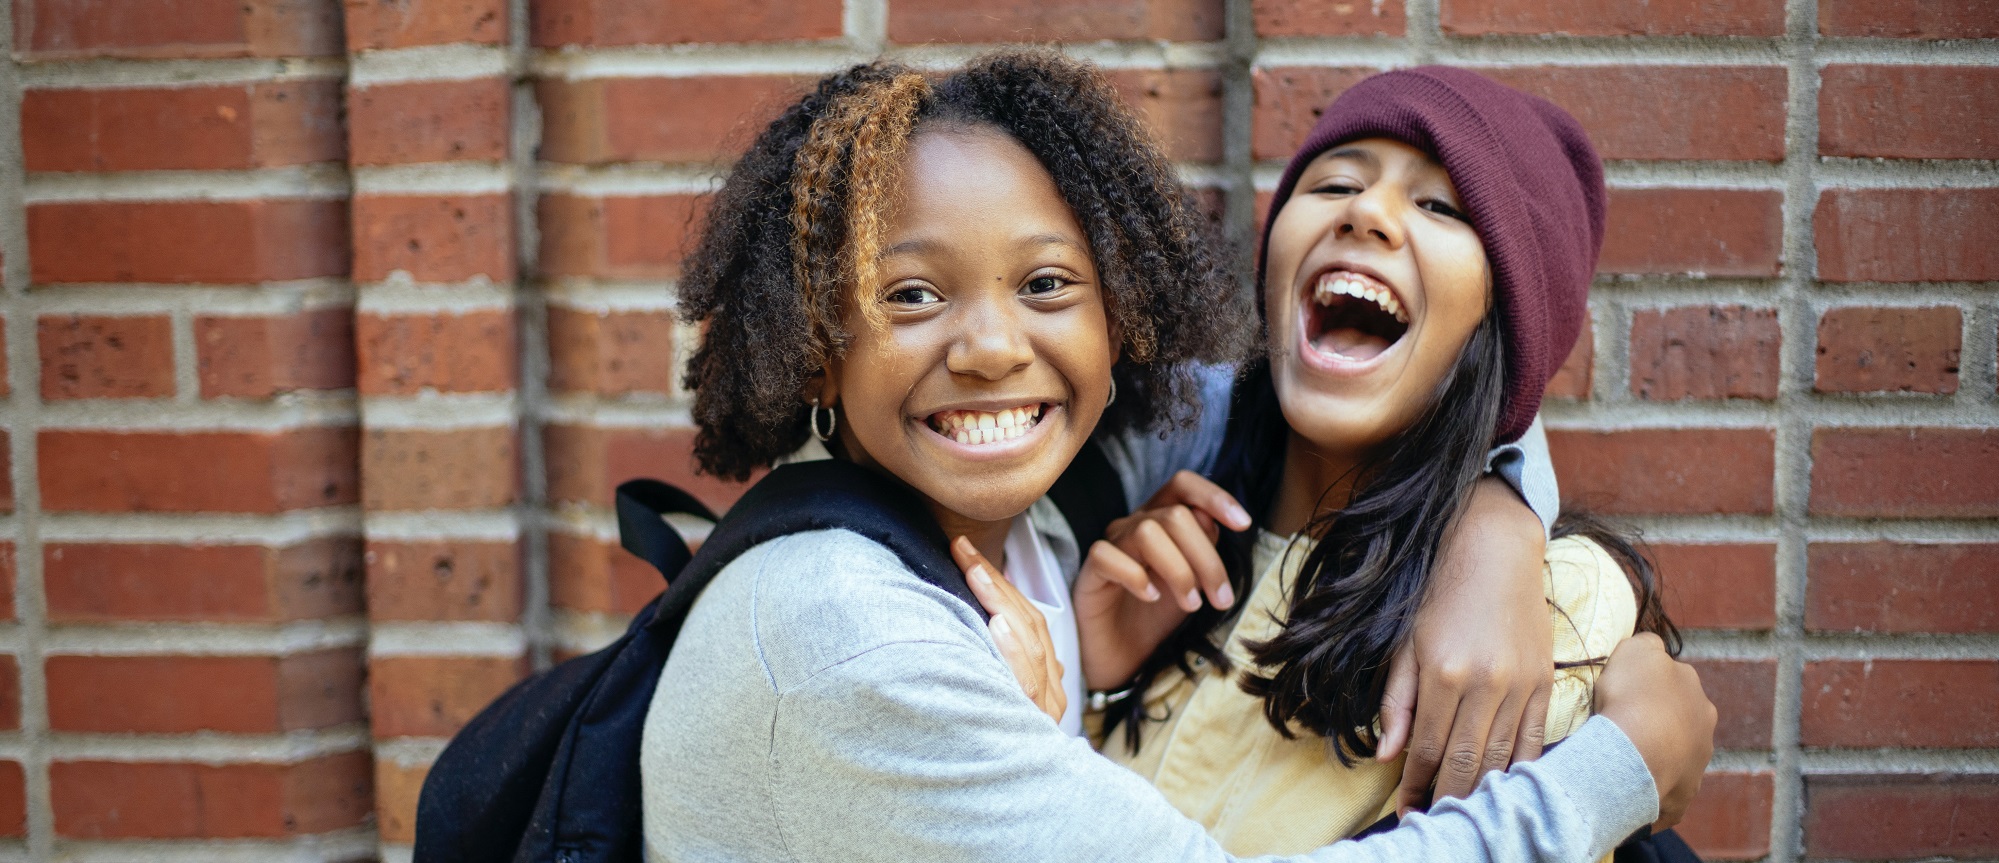 Zwei junge Mädchen lachen und umarmen sich.